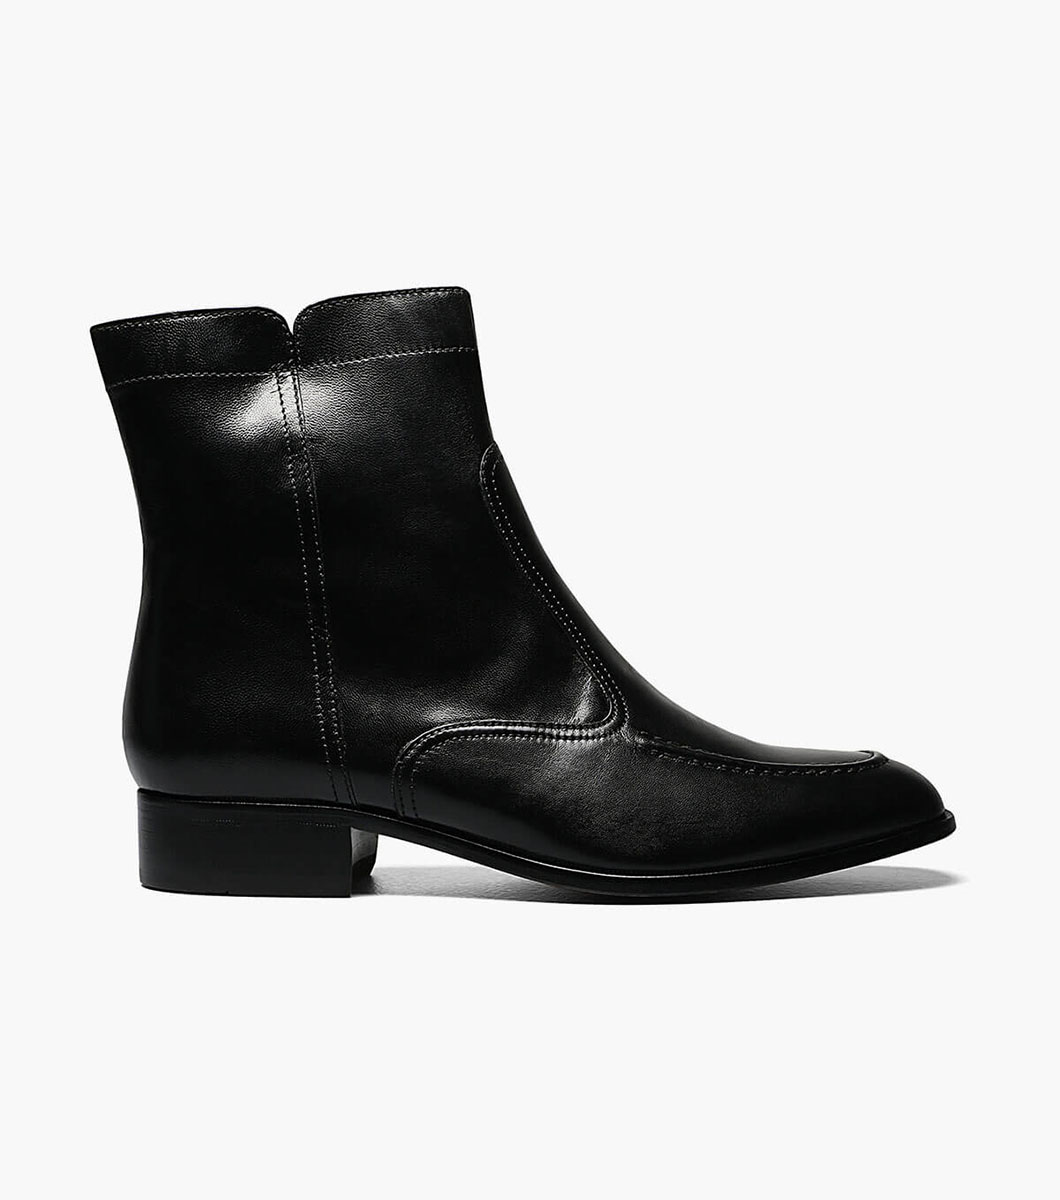 Essex Moc Toe Zipper Boot Men’s Dress Shoes | Florsheim.com